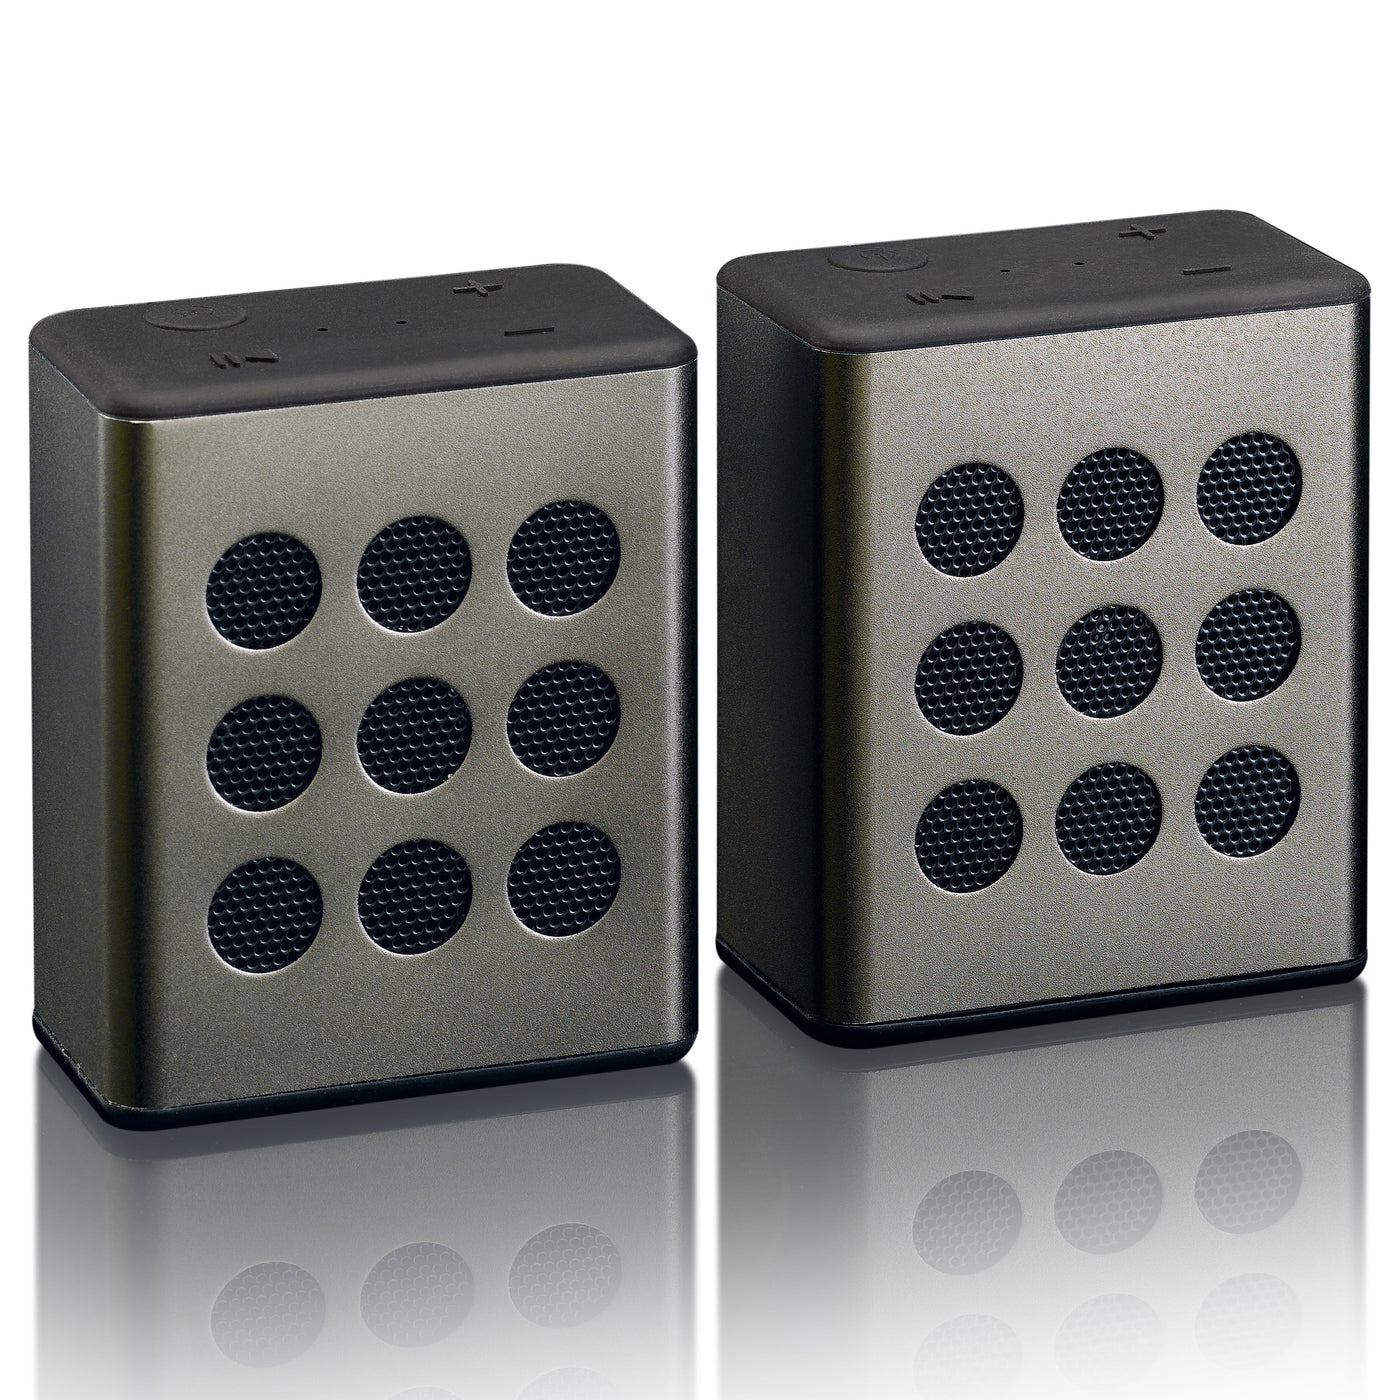 Lenco BTP-200BK Bluetooth® Stereo-Lautsprecherset mit 8 Stunden Spielzeit und Accessoires - Grau